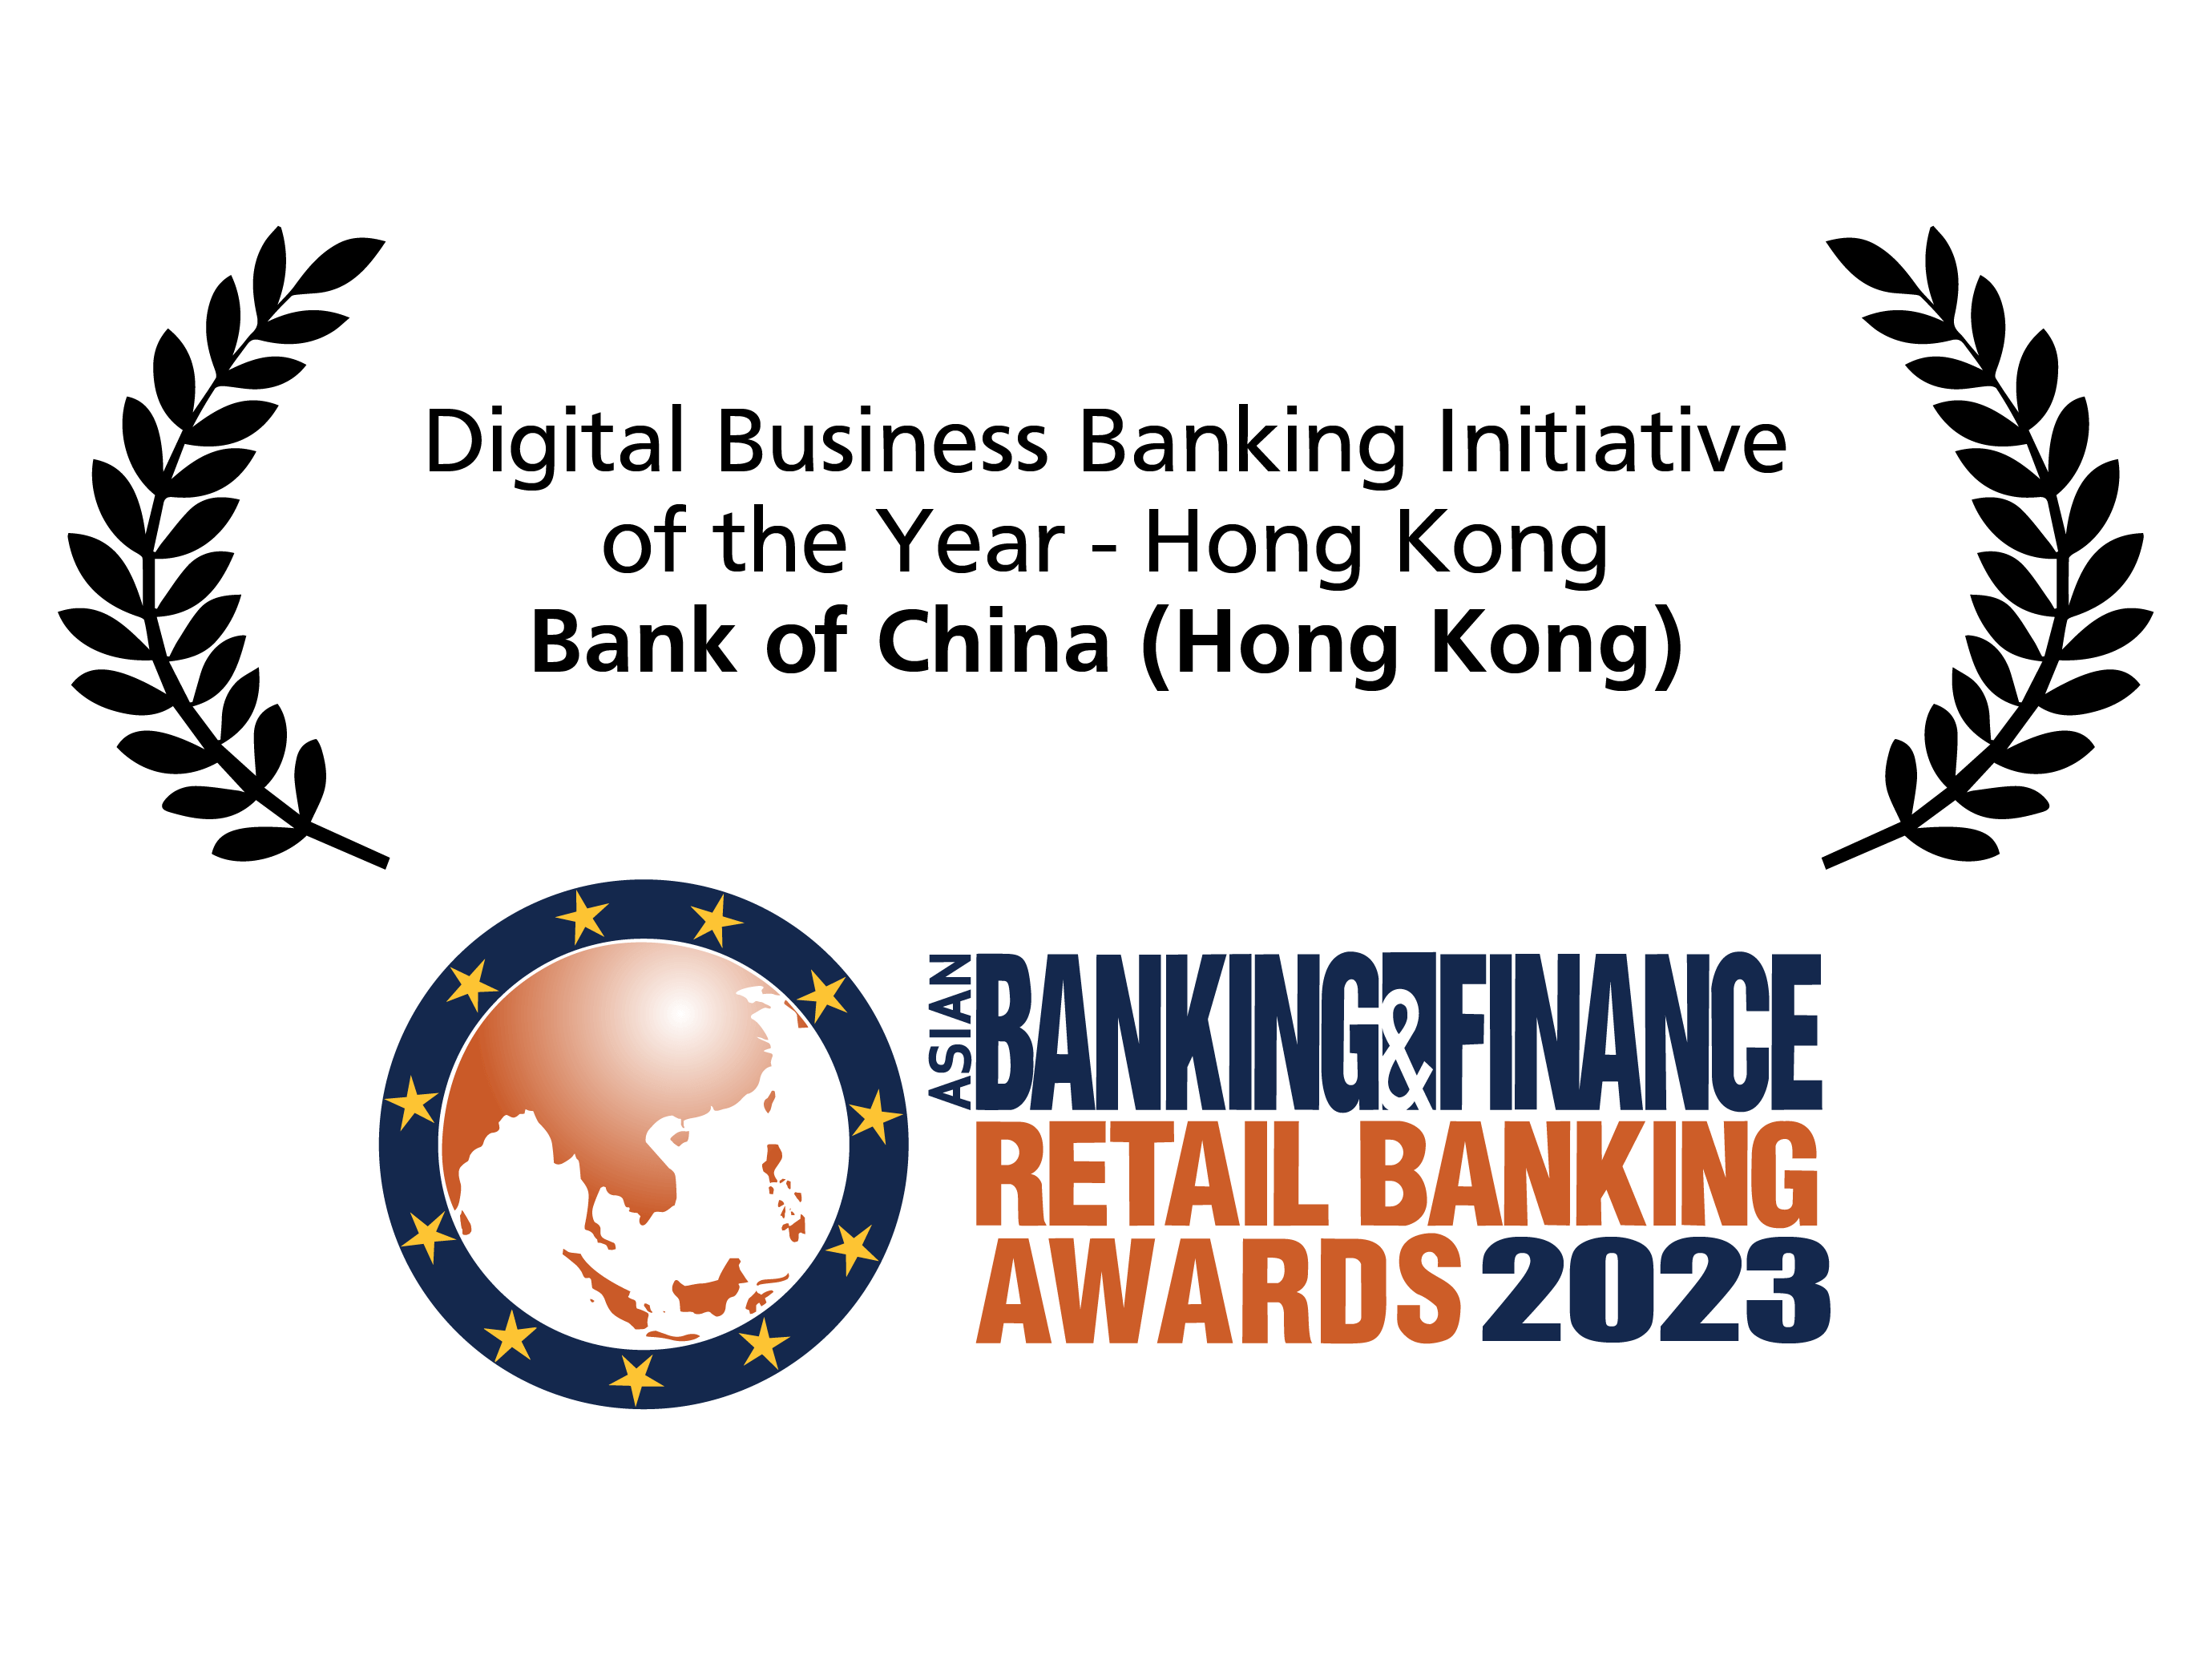 亞洲銀行及財金零售銀行大獎2023<br/>「香港區最佳數碼商業理財銀行大獎」